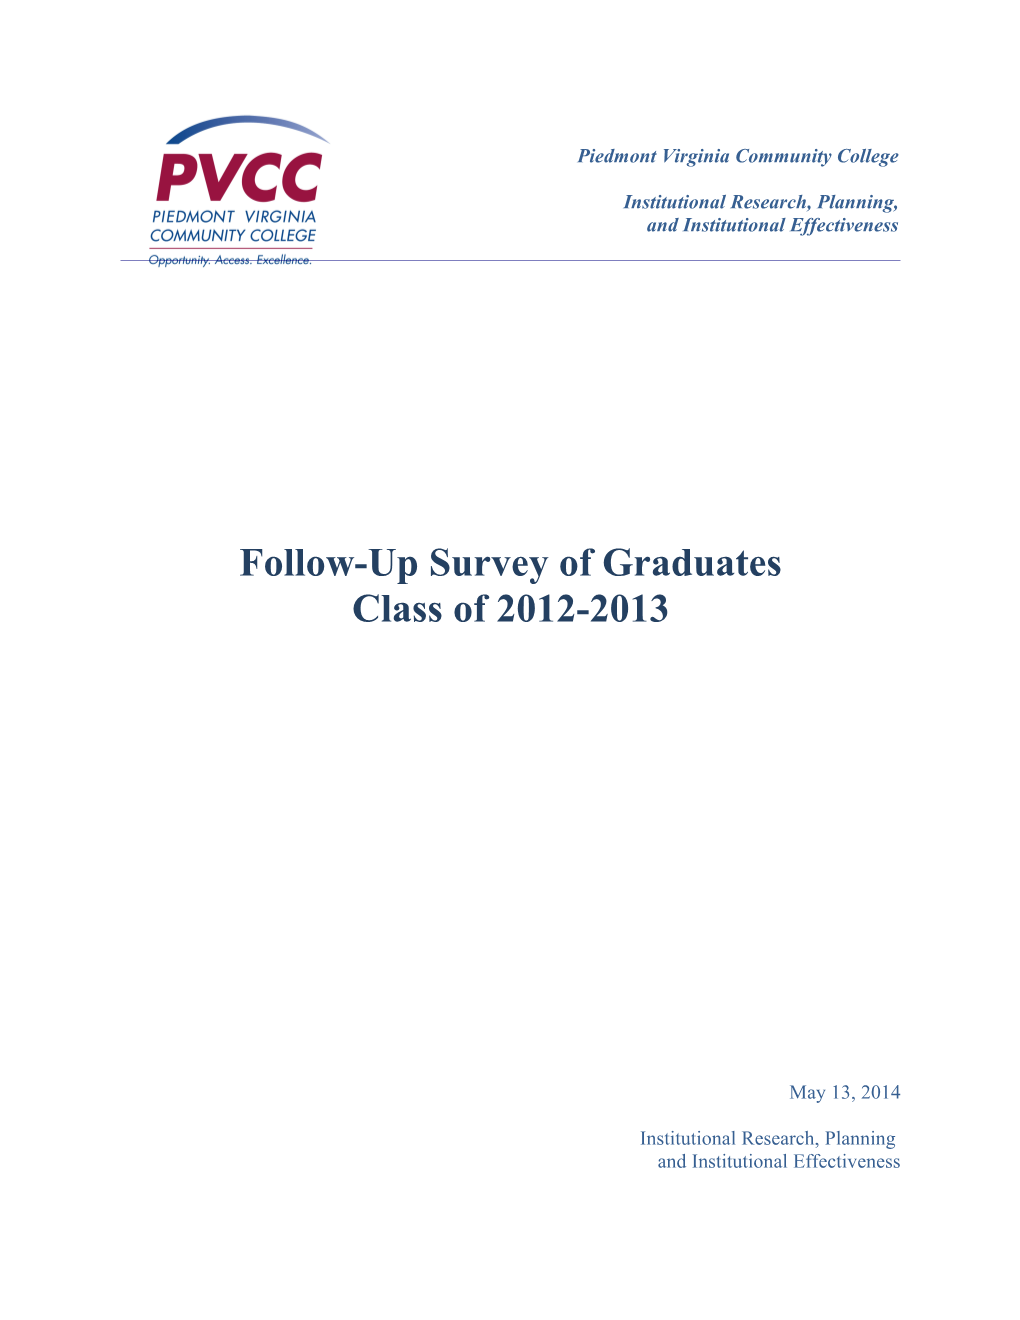 Follow-Up Survey of Graduates: Class of 2012-2013